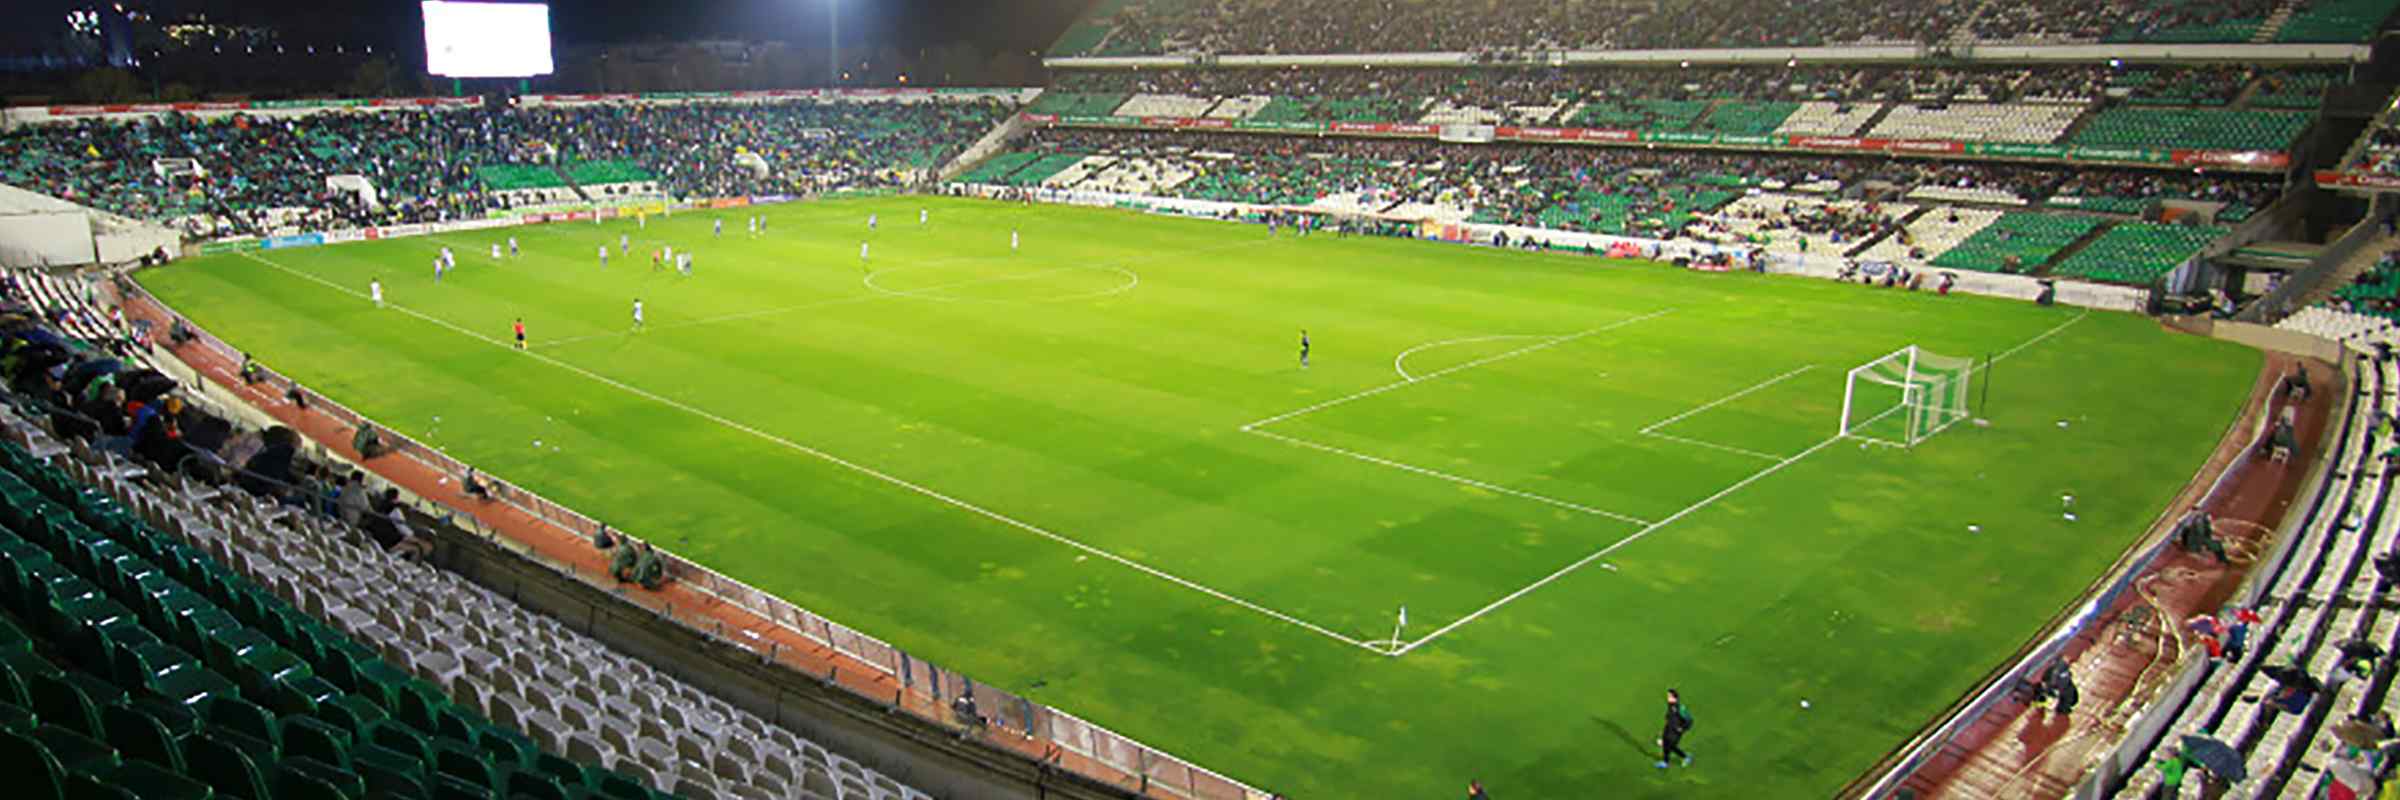 Seat-Compare.com: Estadio Benito Villamarín,Sevilla.